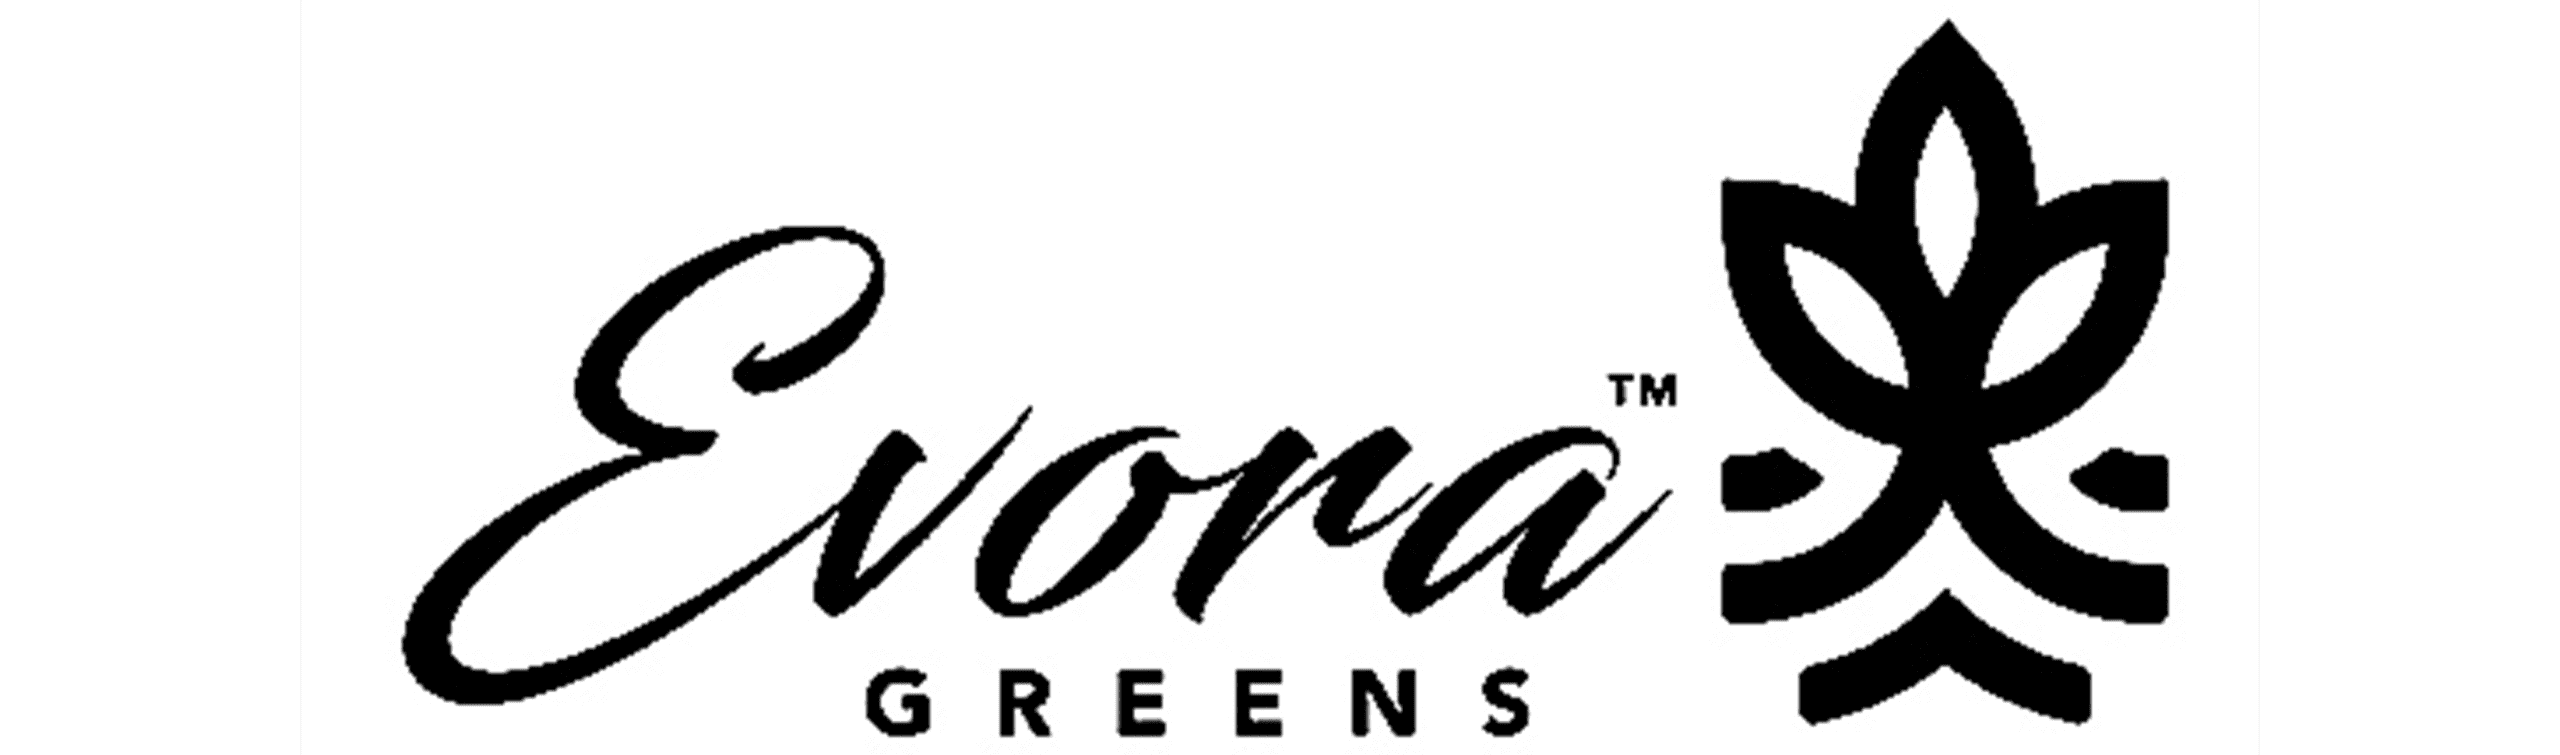 evora greens logo